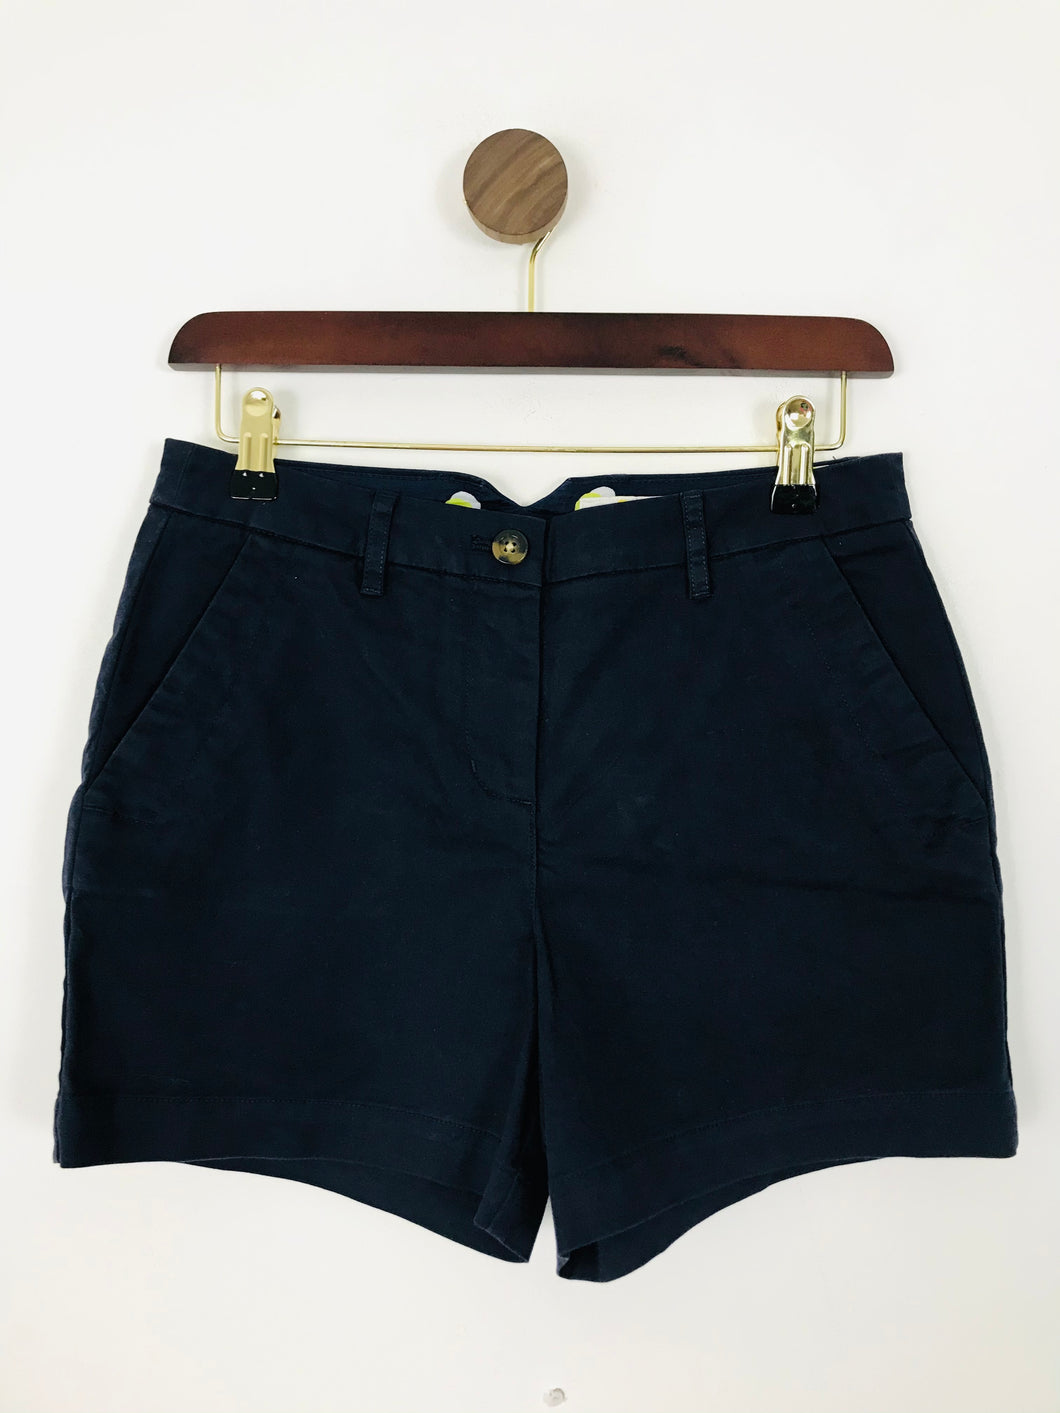 Boden Women’s Cotton Shorts | UK8 | Dark Navy